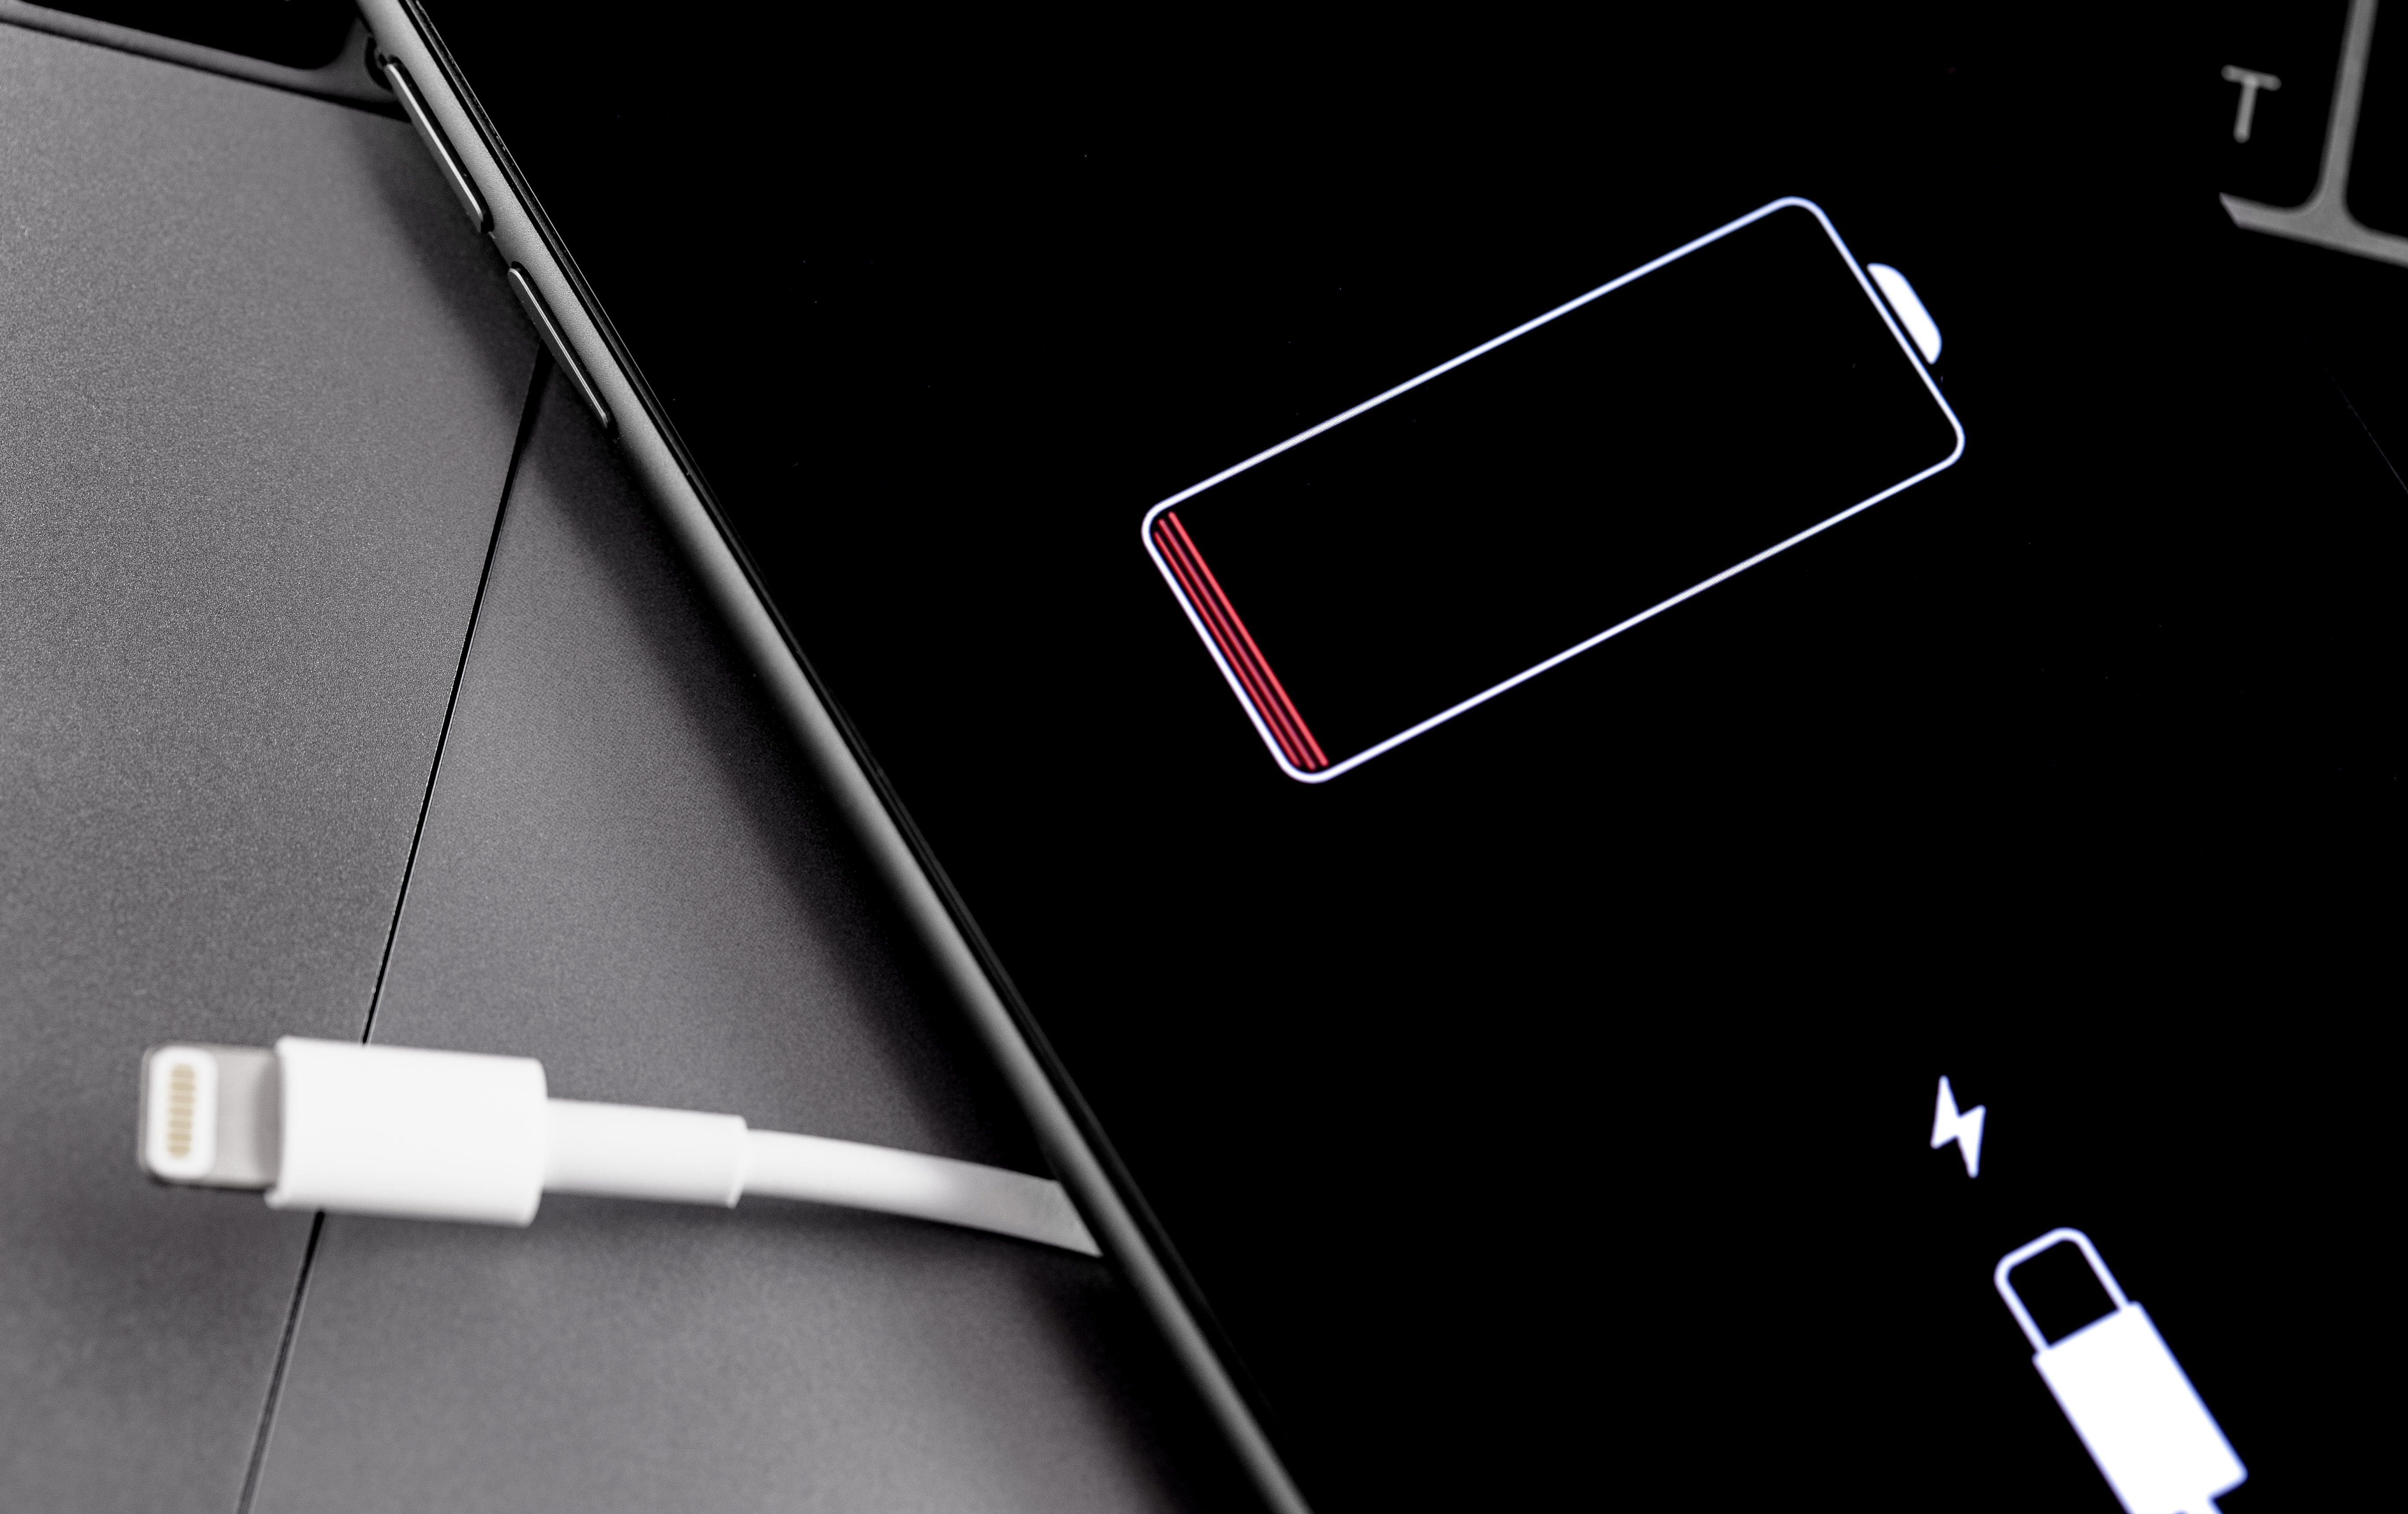 iPhone на серой поверхности со значком низкого заряда батареи и зарядным кабелем слева от телефона.